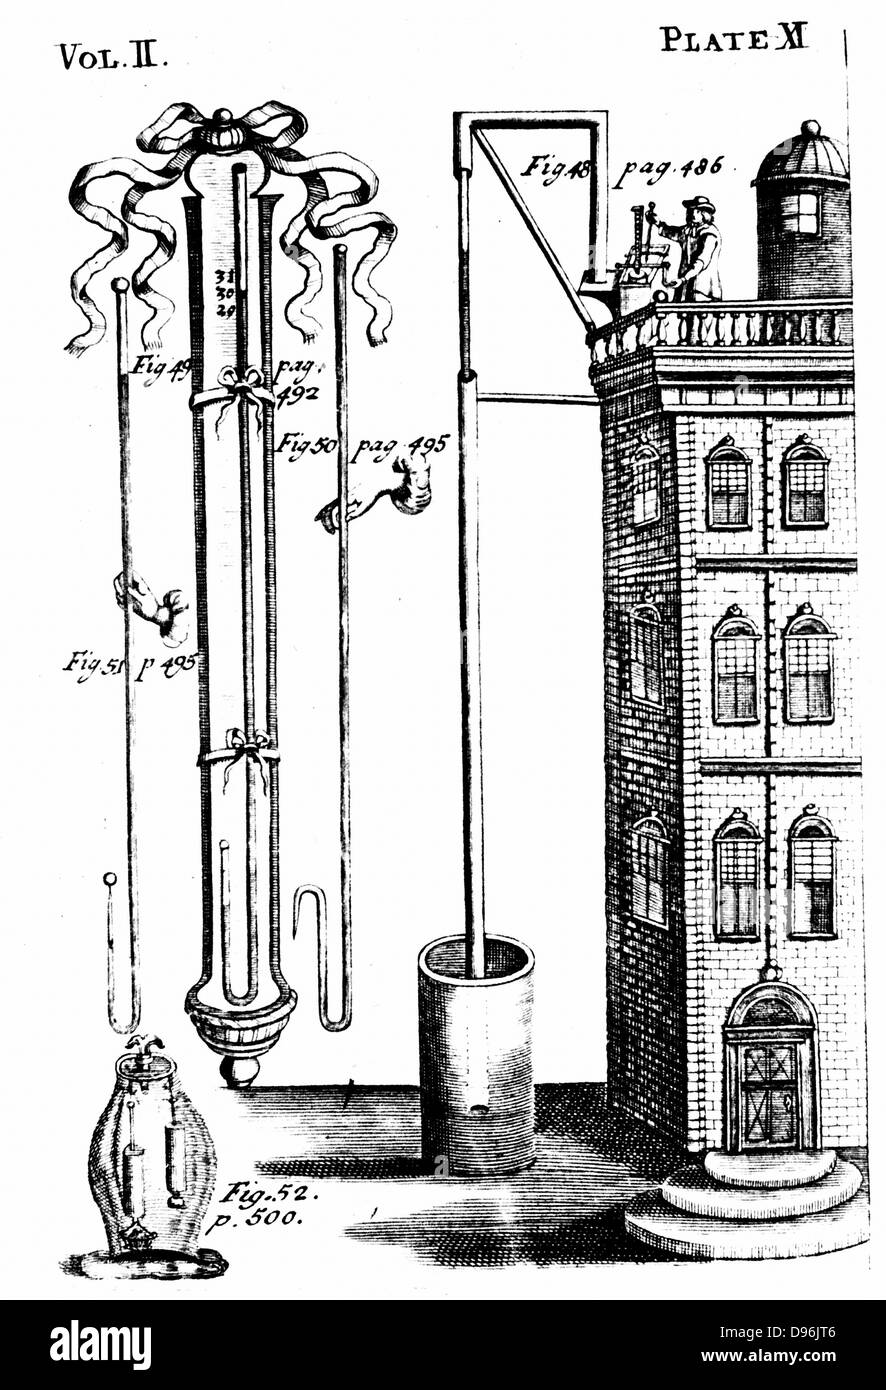 Robert Boyle (1627-91) Expériences sur l'Air de Printemps. Un appareil similaire à l'eau de Guericke baromètre. Trouvé de l'eau pourrait être soulevé que 33ft 6in. Édition de Boyle's works publié 1725. Gravure Banque D'Images